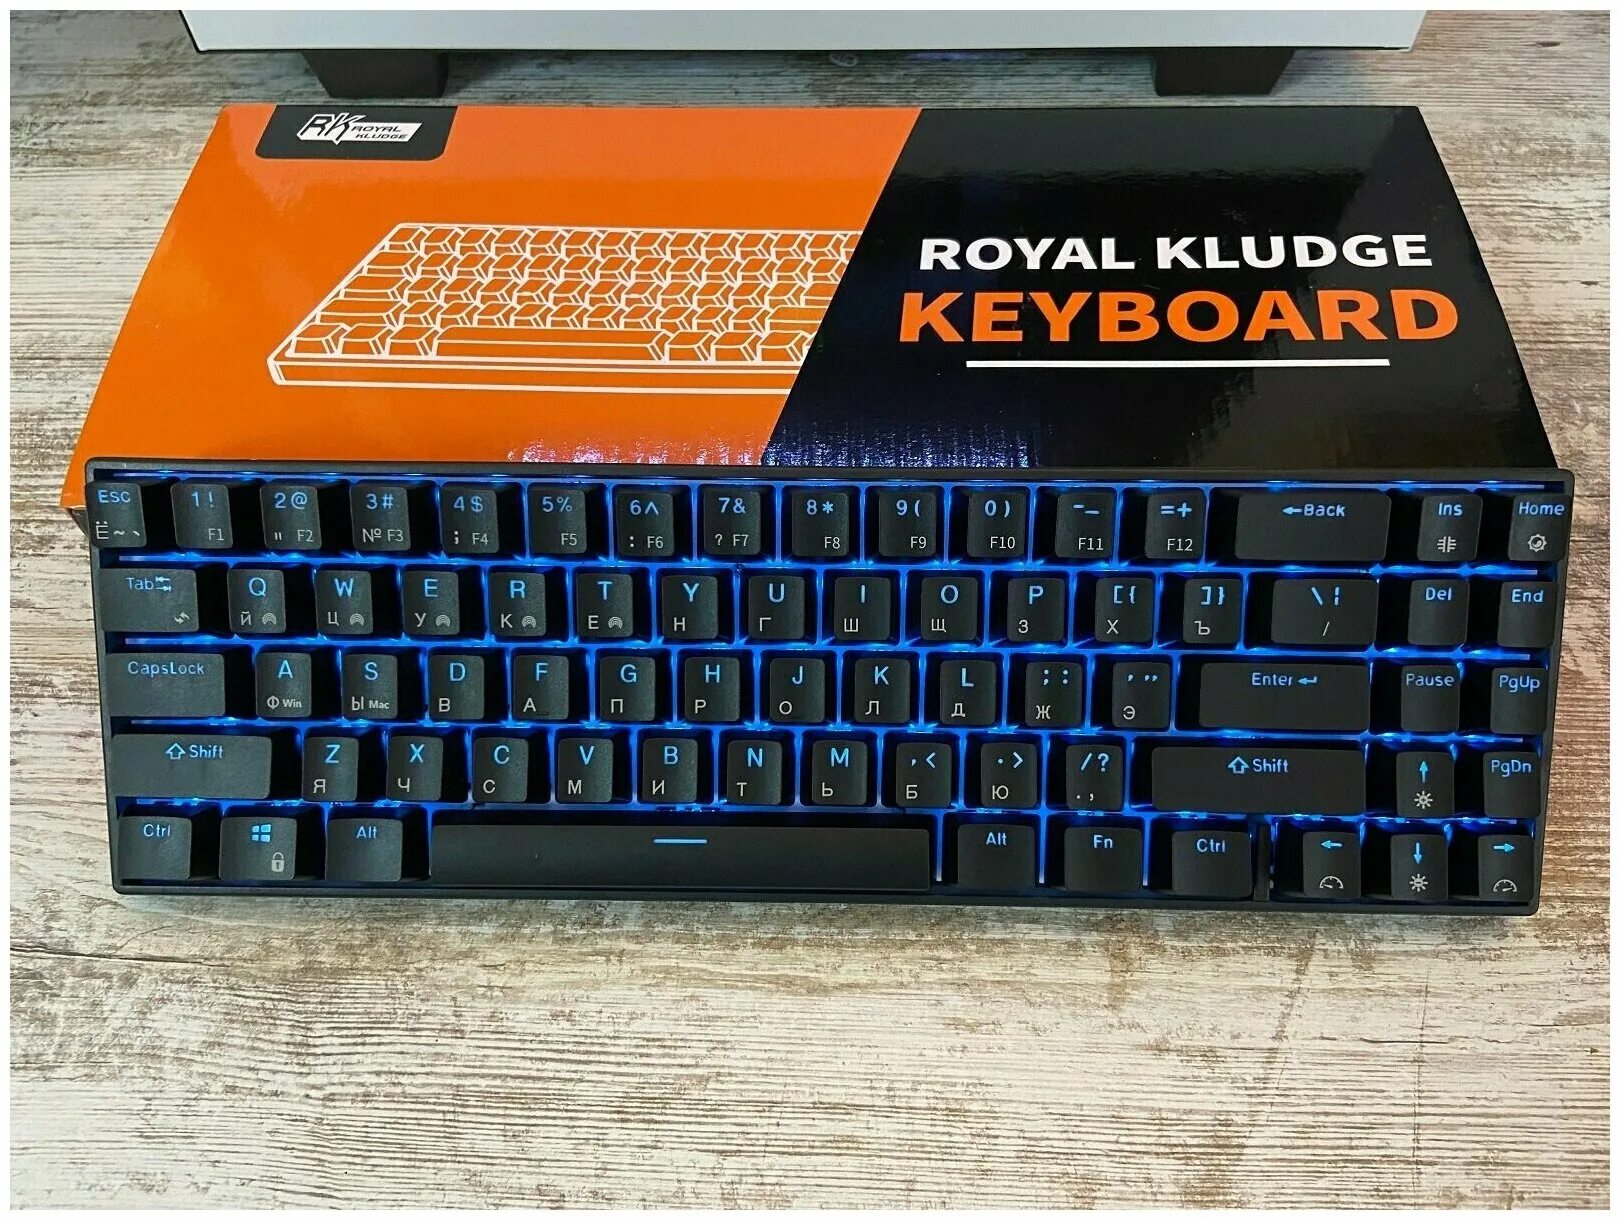 Royal cludge. Royal Kludge rk71. Клавиатура Royal Kludge. Rk71 клавиатура. RK Royal Kludge Keyboard.